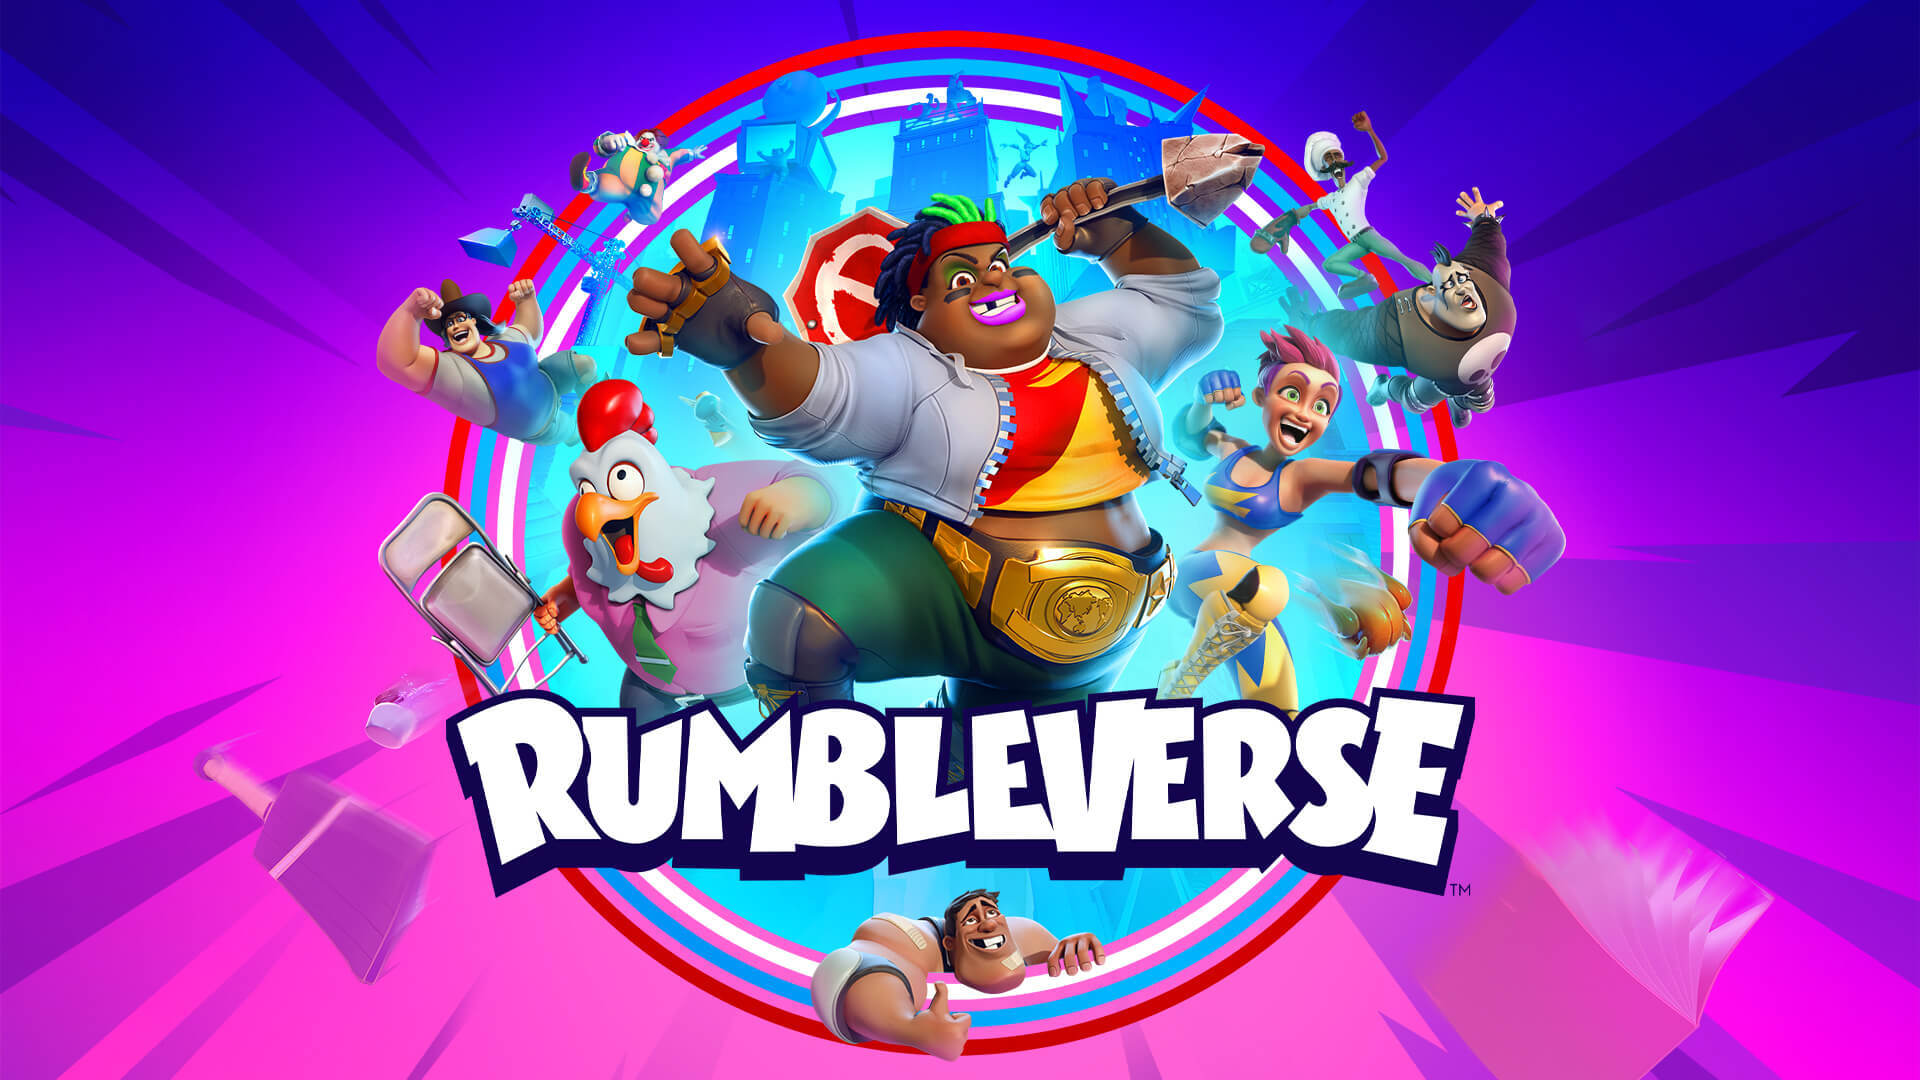 Spielplatz- und Duo-Modus für den Rumbleverse Launch am 11. August